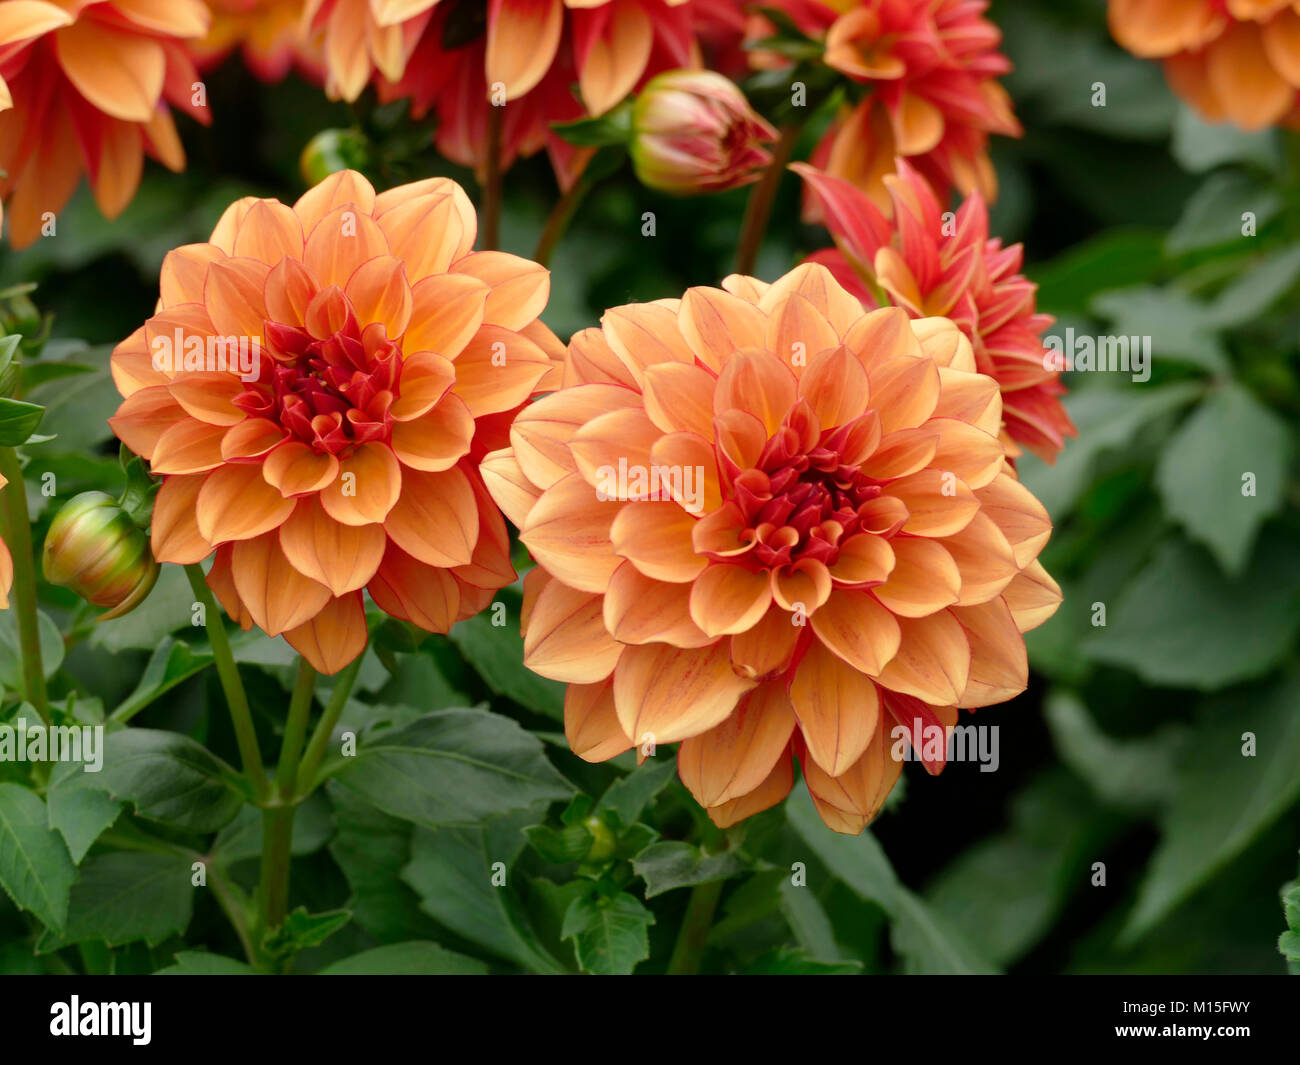 Orange Dahlia in a Home Garden Stock Photo